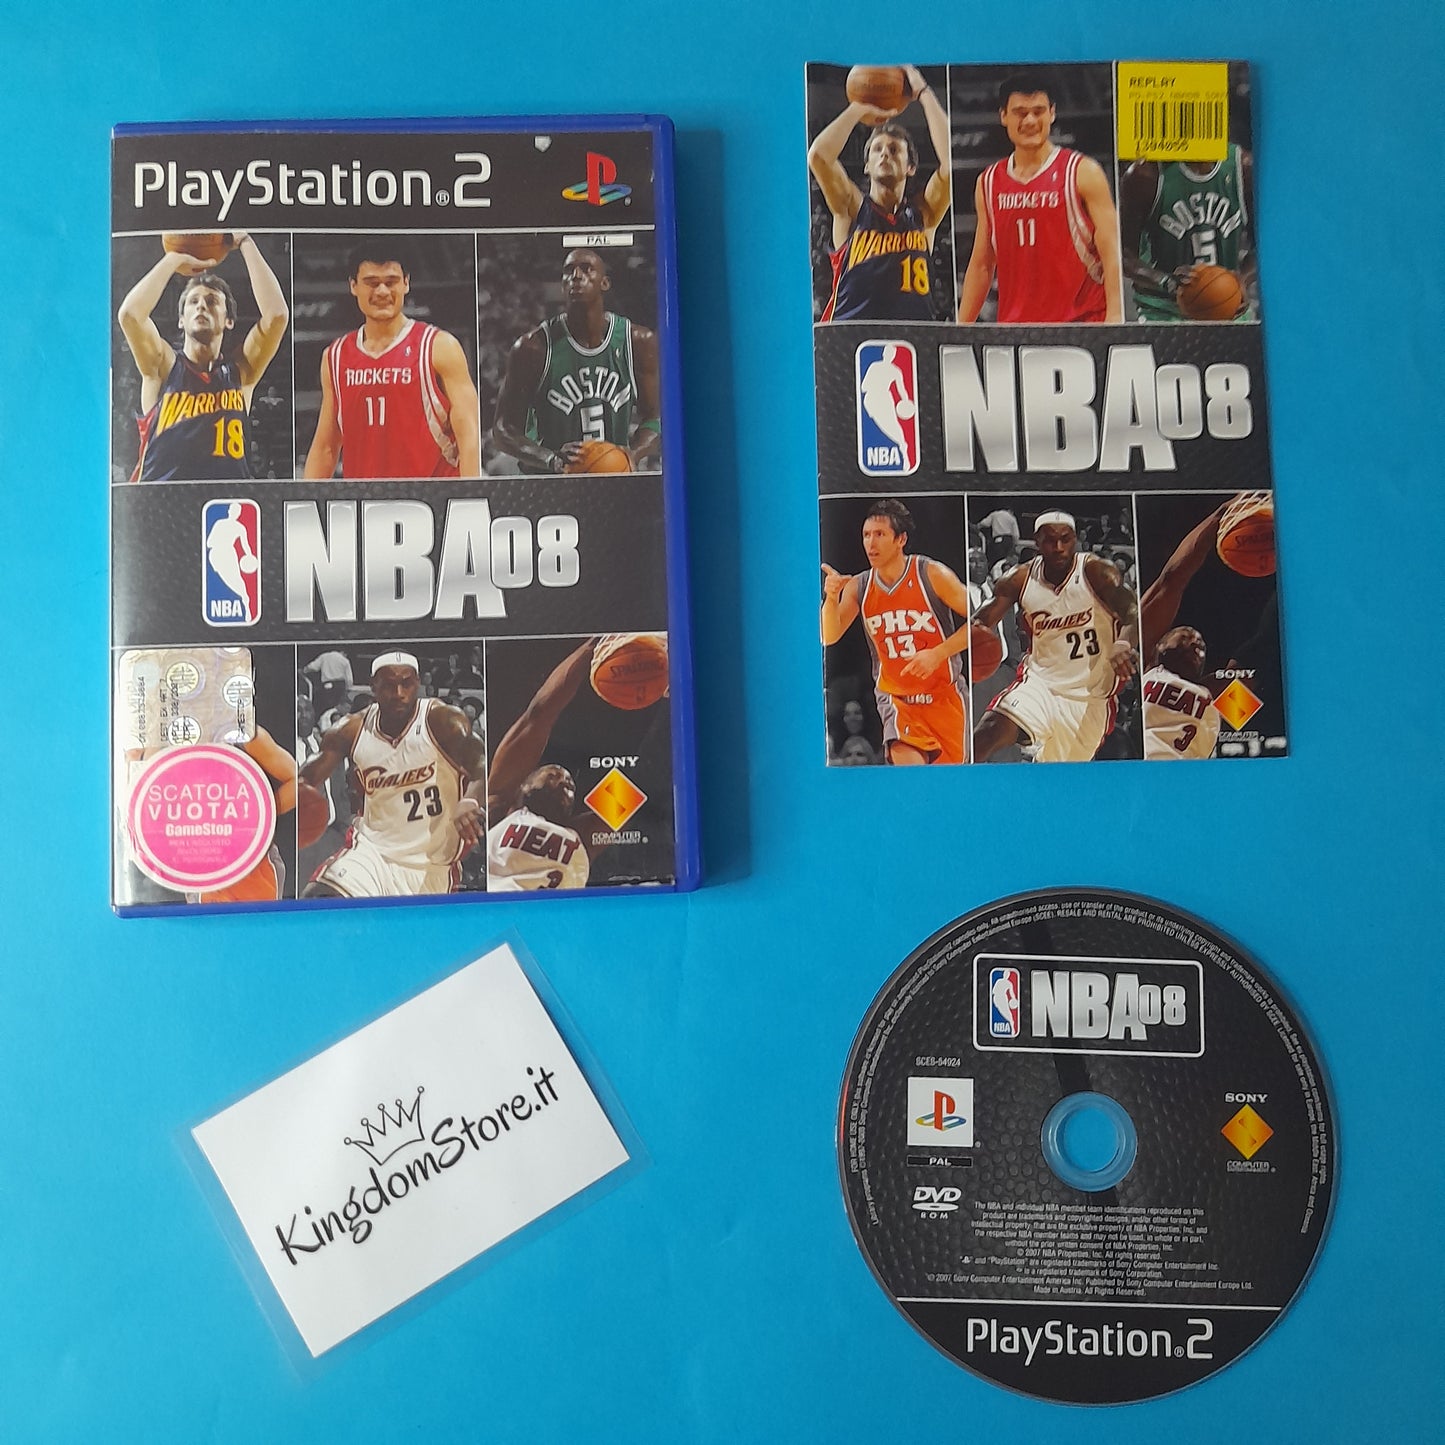 NBA 08 - Playstation 2 - PS2